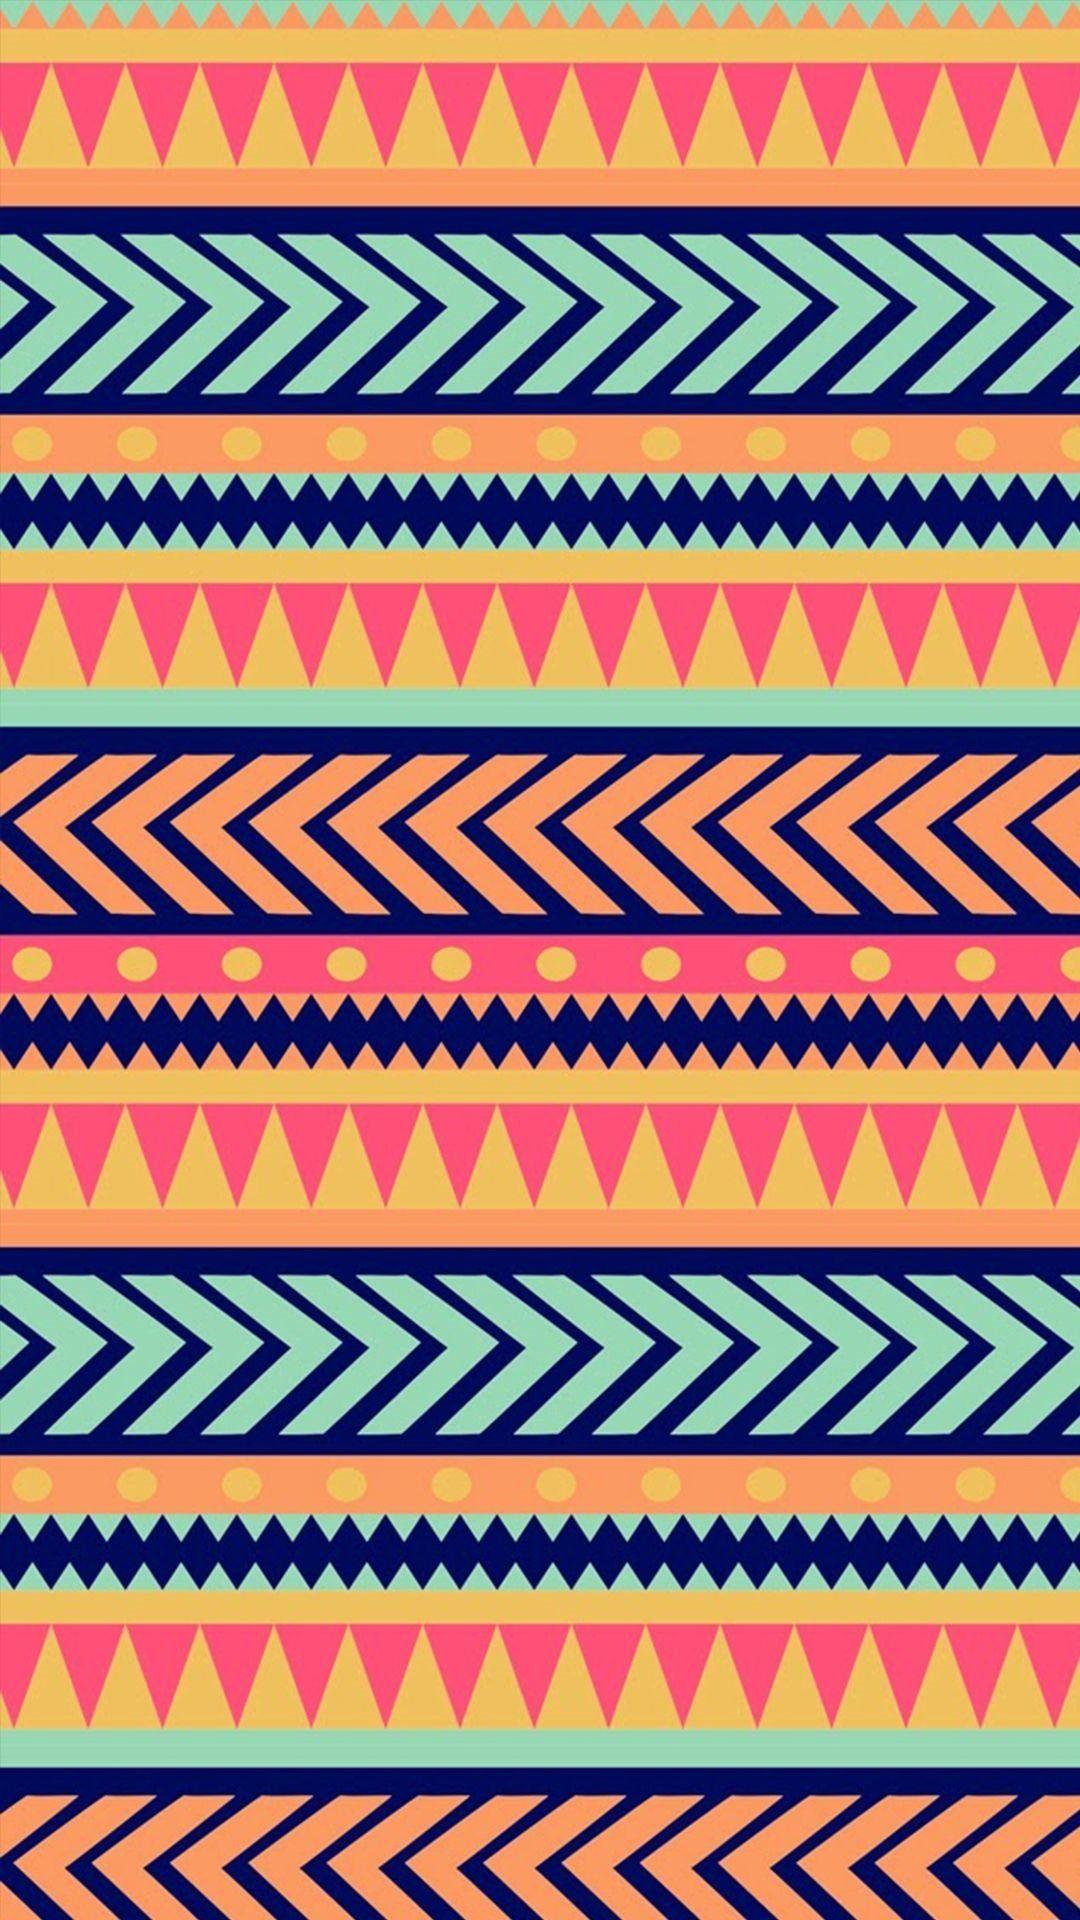 Aztec Pattern Wallpapers - Top Những Hình Ảnh Đẹp